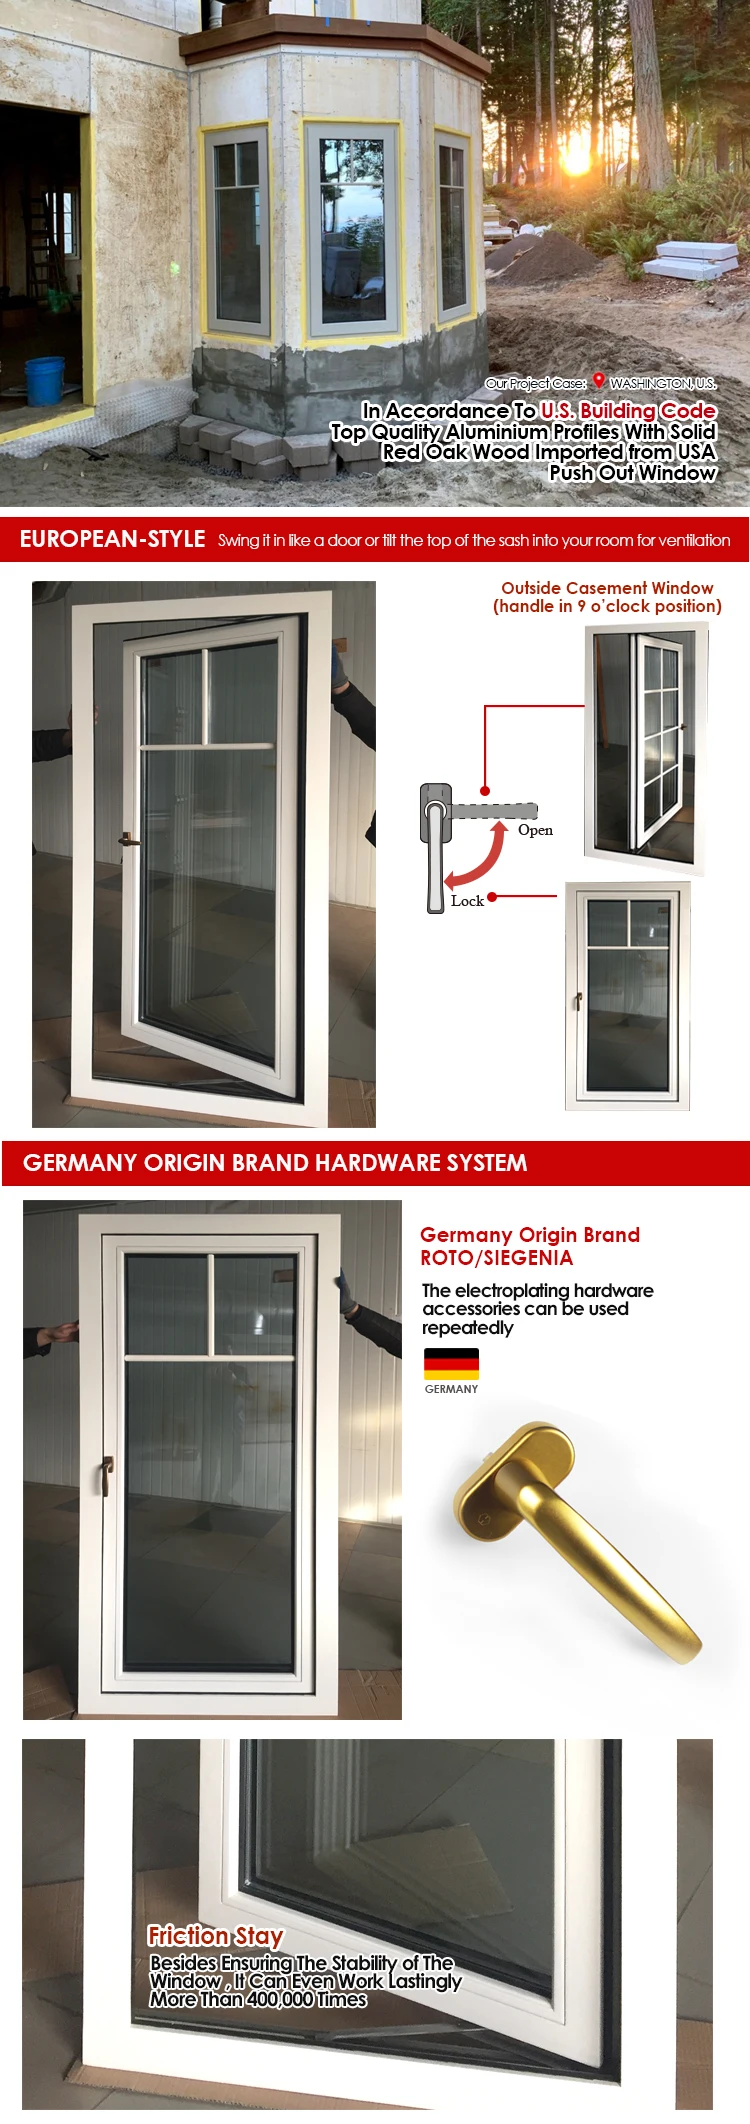 Doorwin CE NFRC European Style Germany Hardware heat insulation outswing casement windows